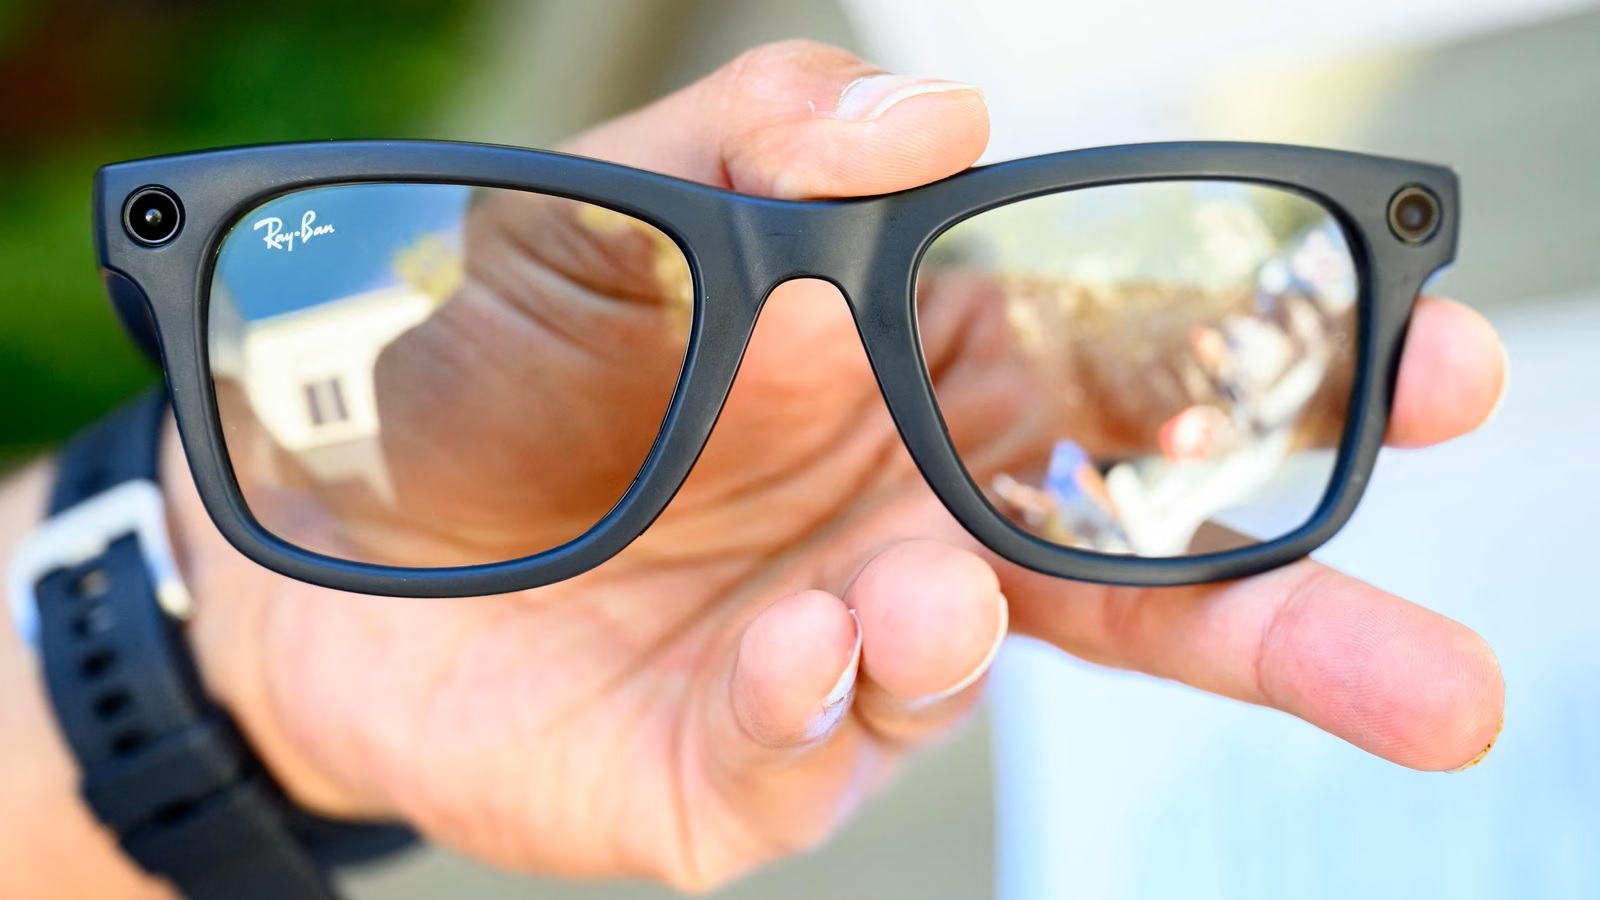 Ray-Ban Meta Smart-Glasses, la fusione perfetta tra stile e tecnologia -  TecnoAndroid